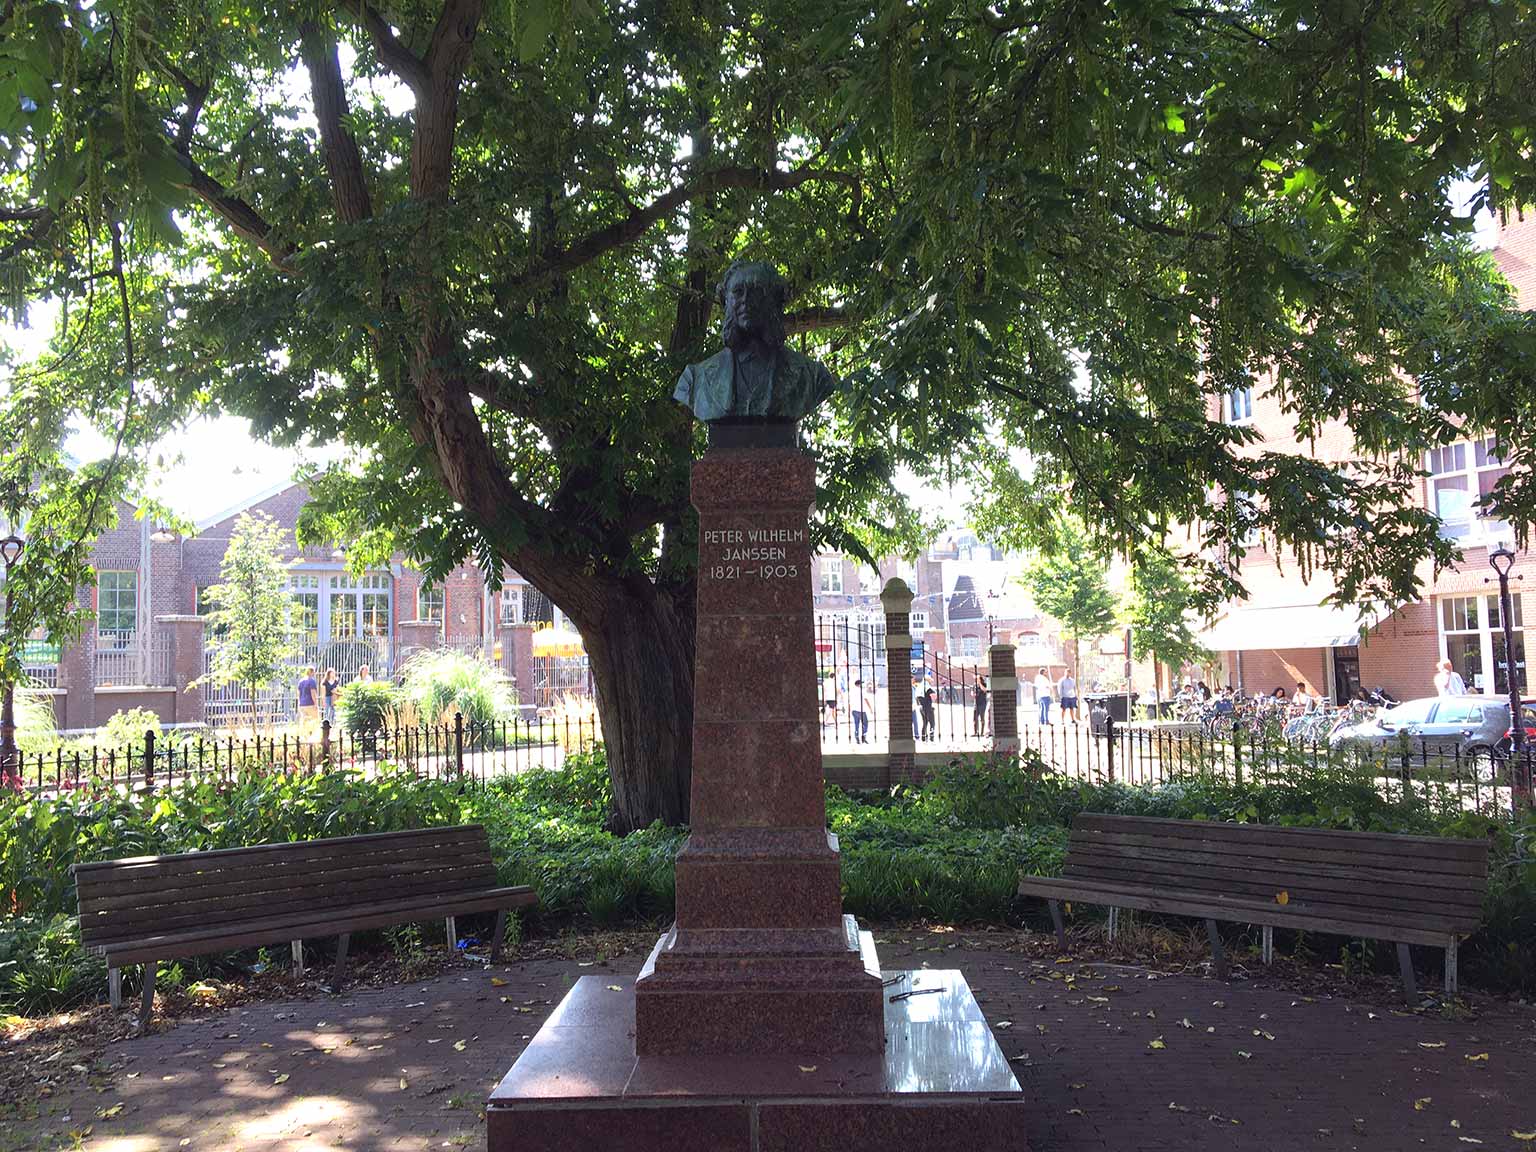 Statue of P.W. Janssen at Bellamyplein, Amsterdam